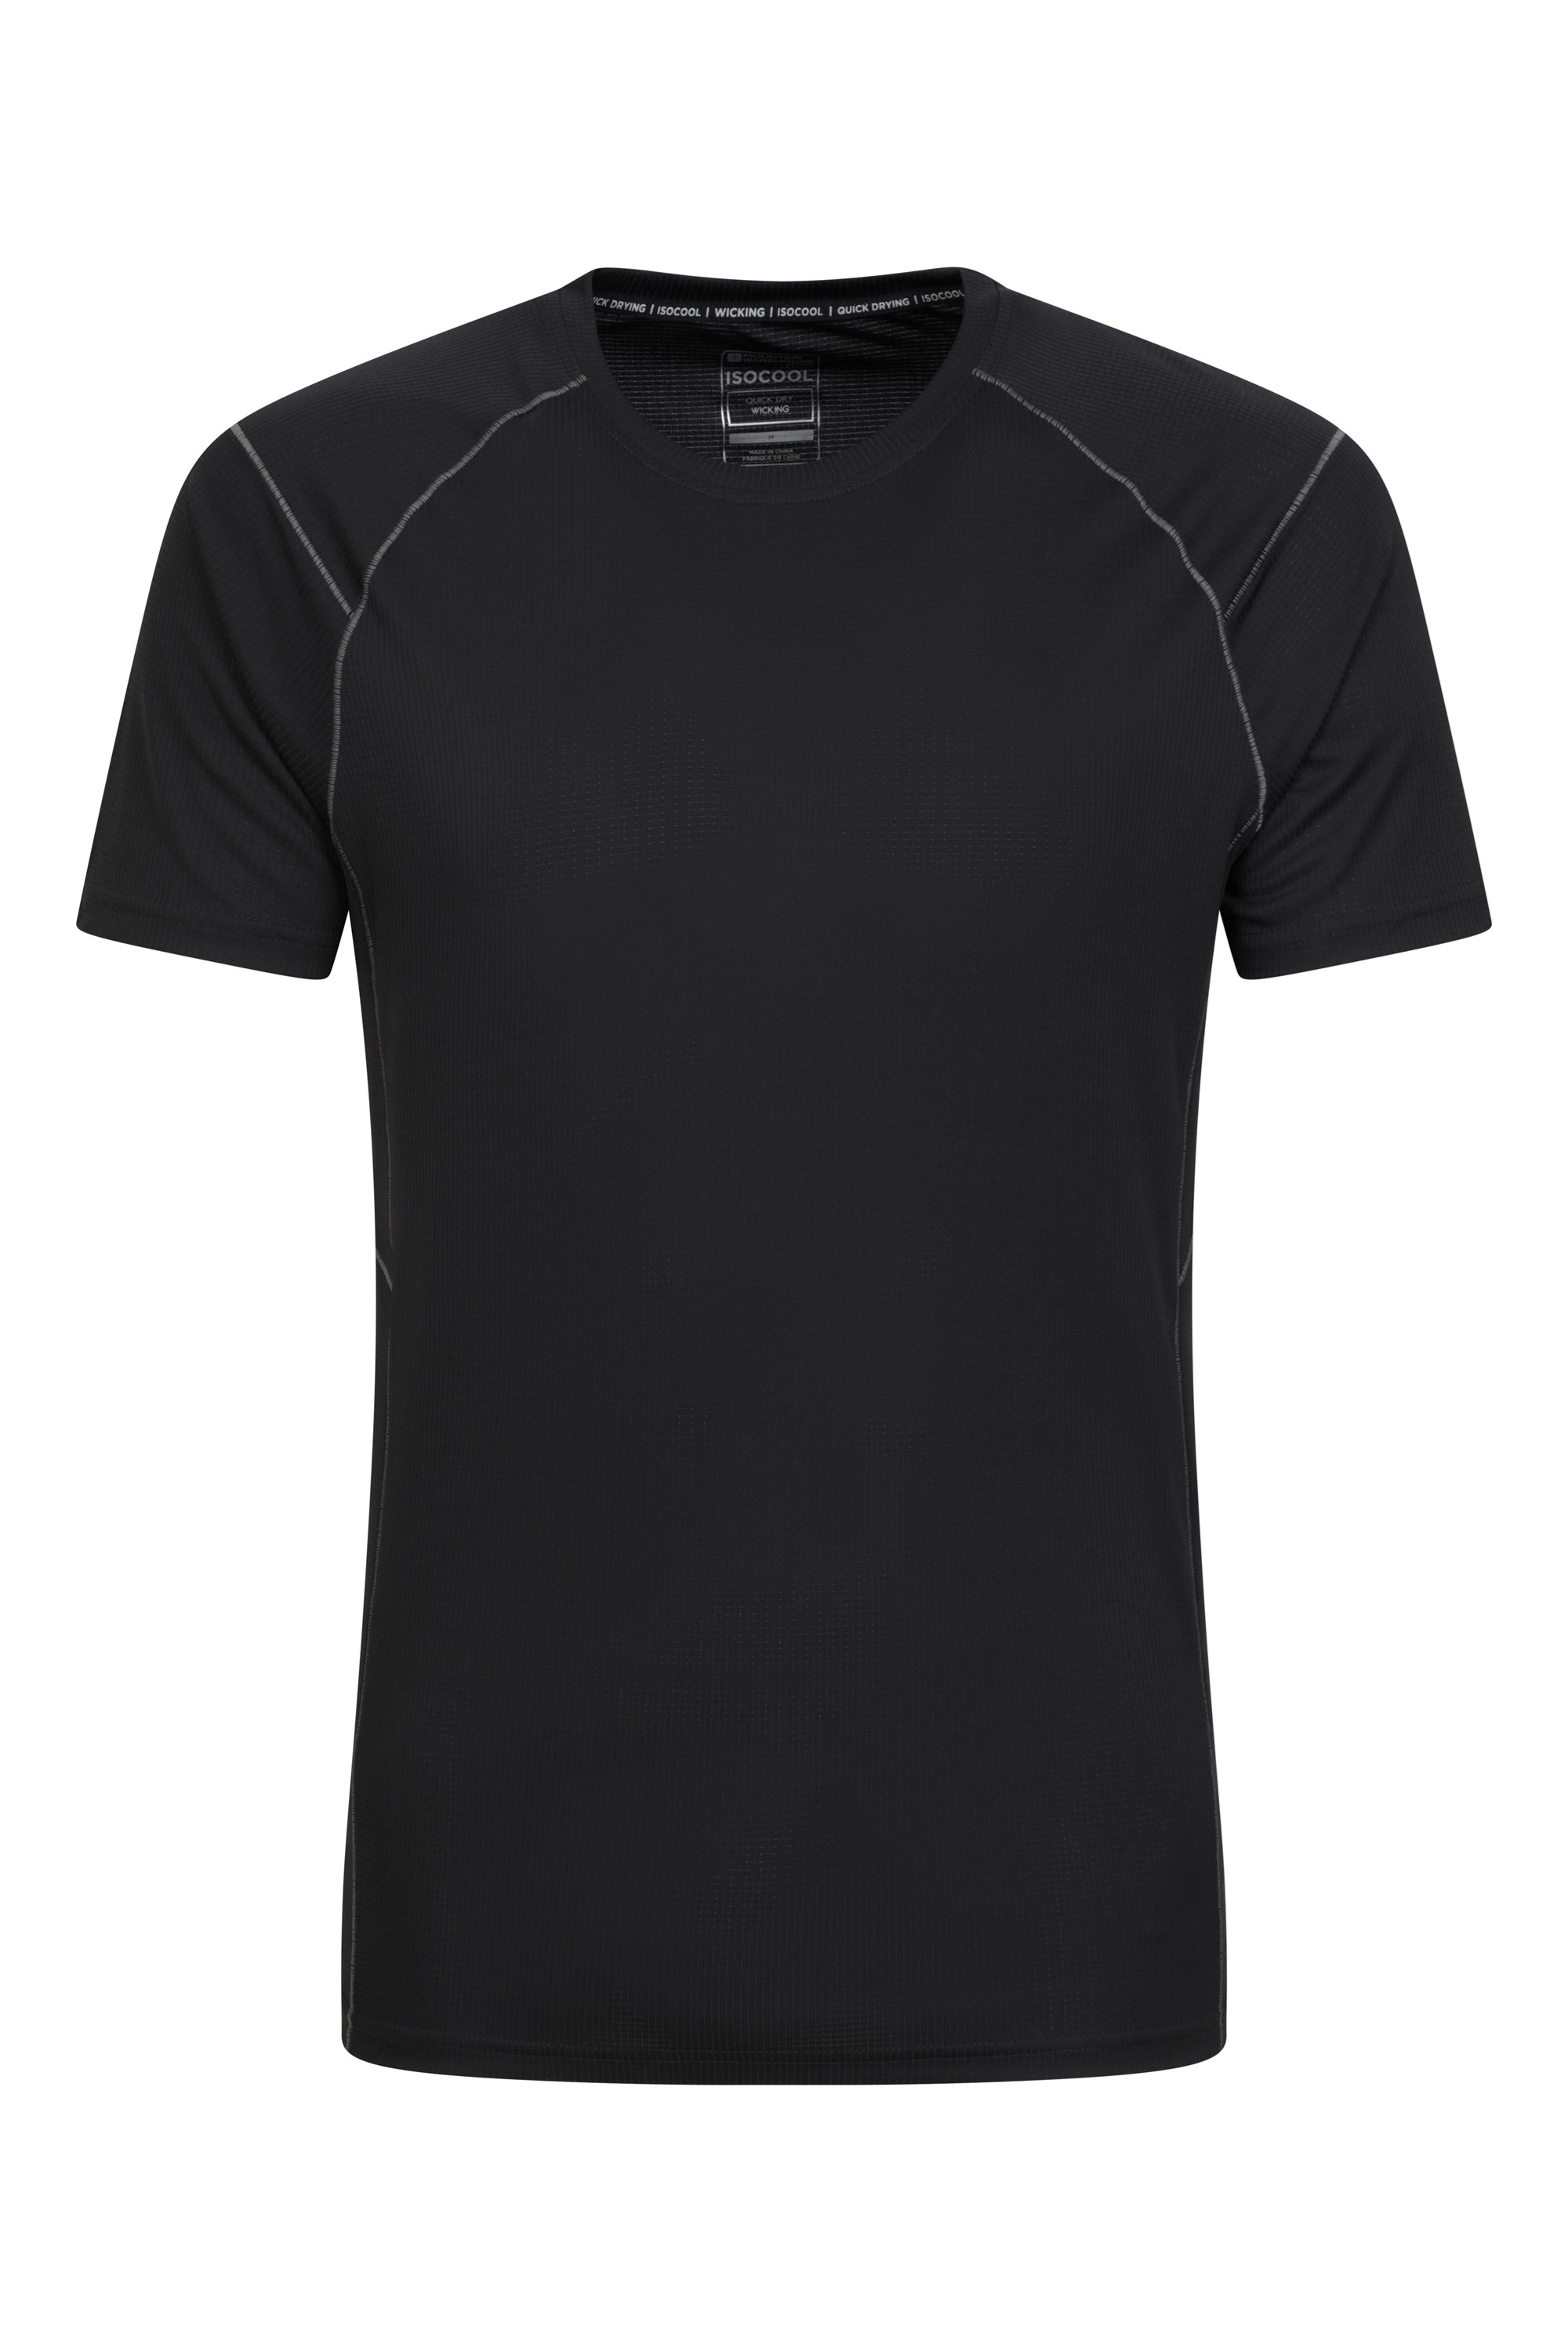 Approach Mens Lightweight Hiking T-Shirt - Black